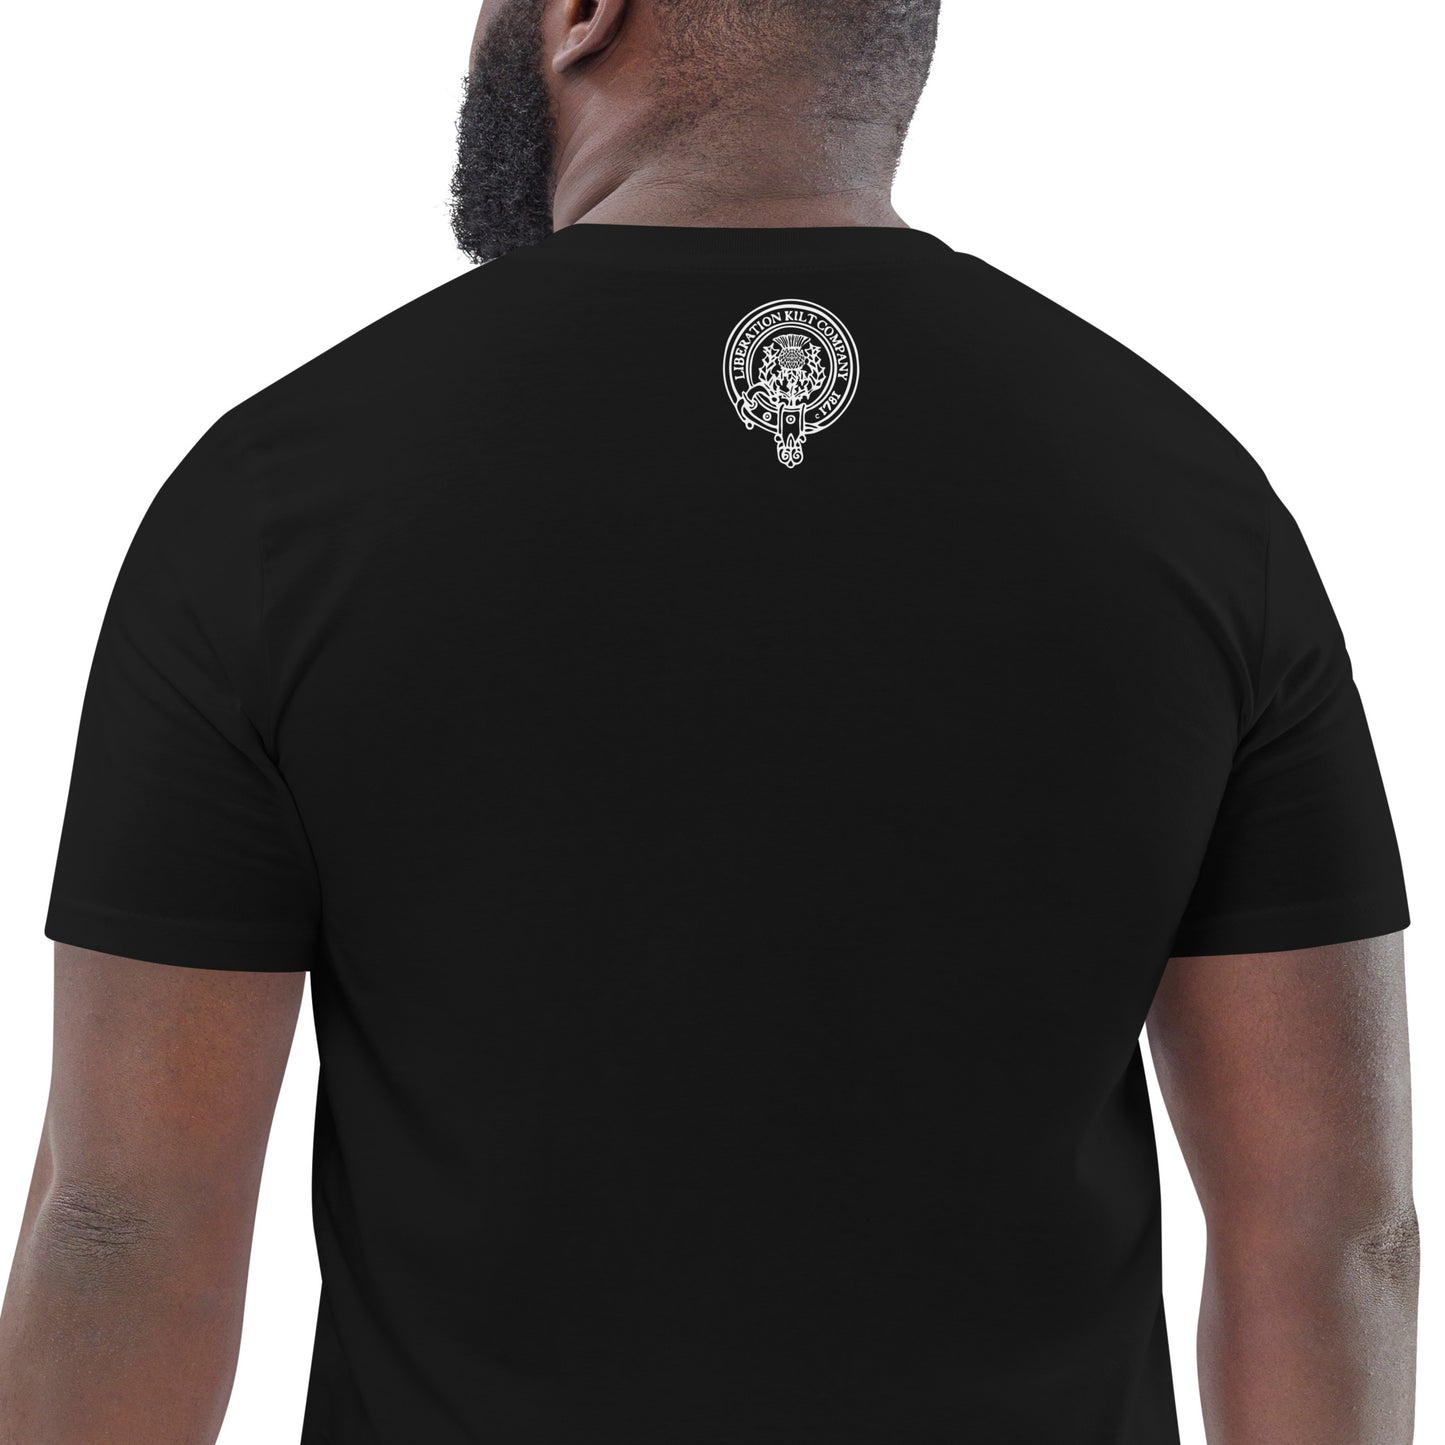 PIPE DREAM Black Unisex T-Shirt B/W Print